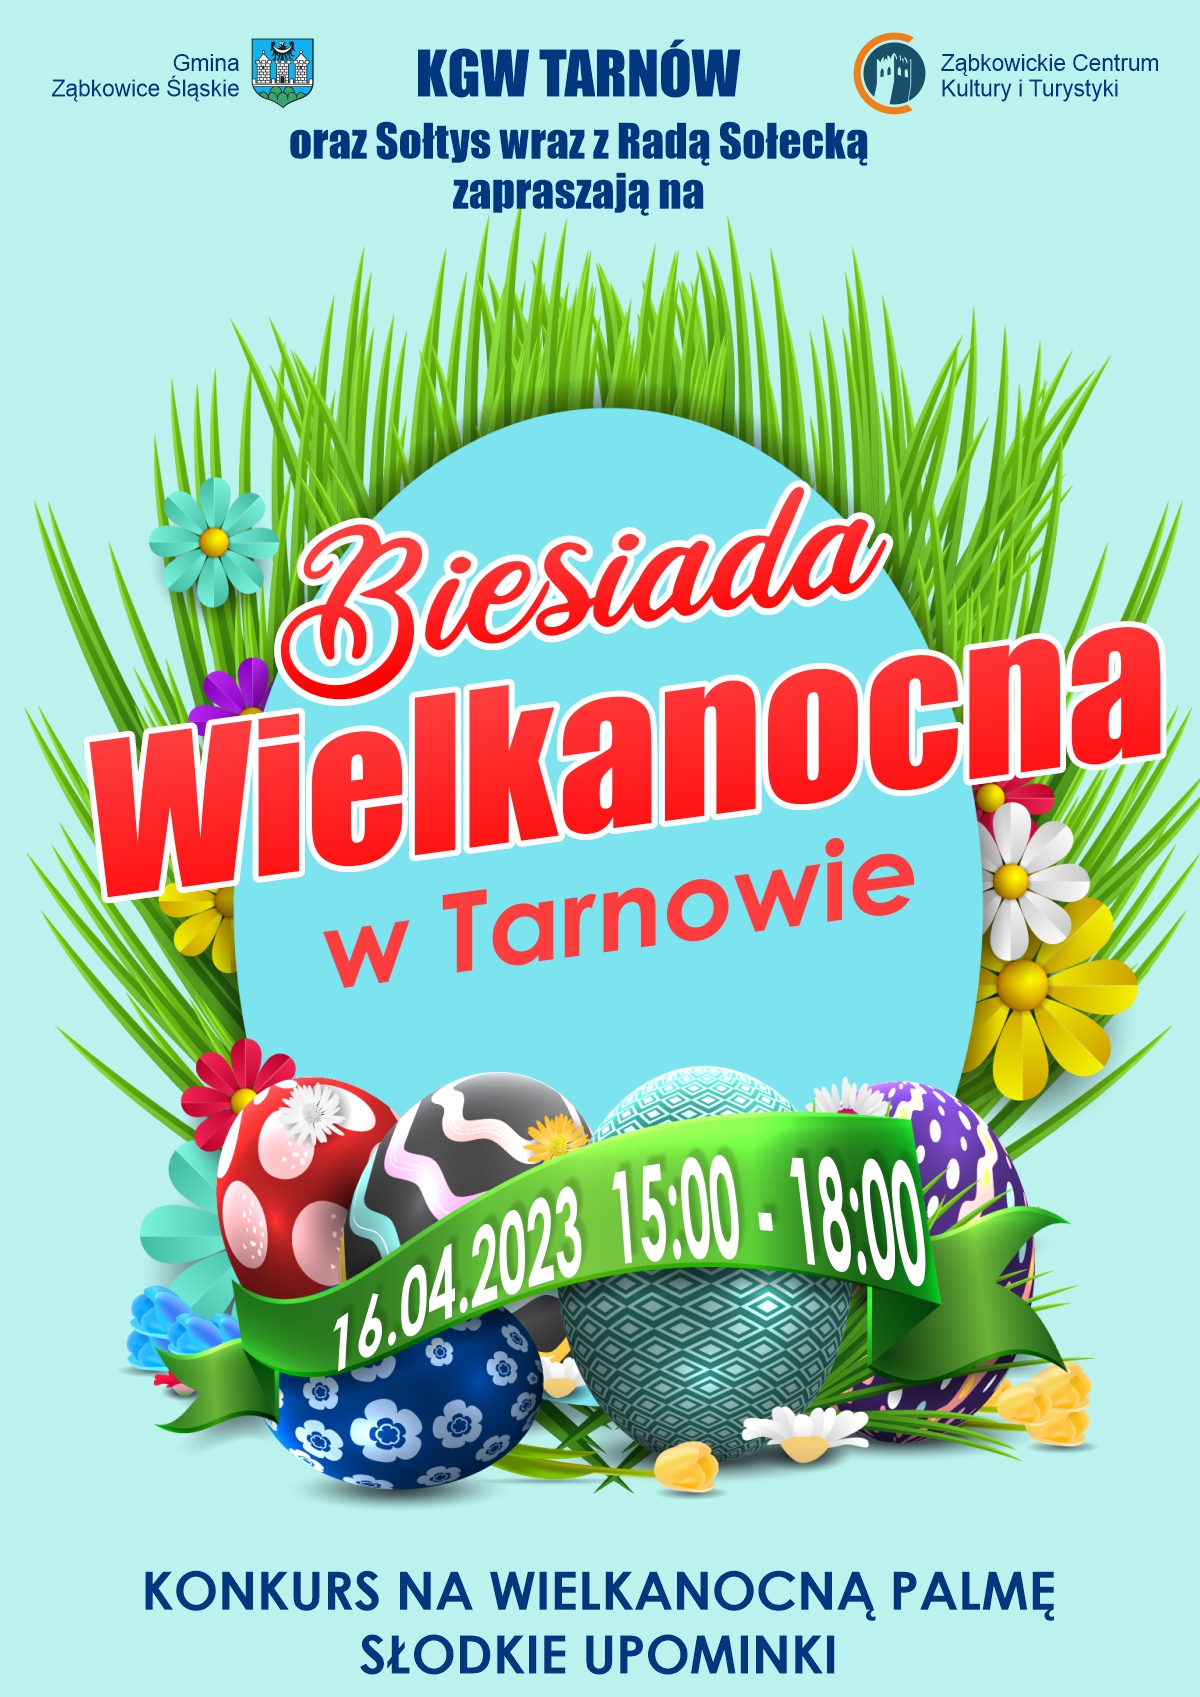 Plakat informujący o Biesiadzie Wielkanocnej w Tarnowie 16.04.2023 od godziny 15:00 do 18:00.